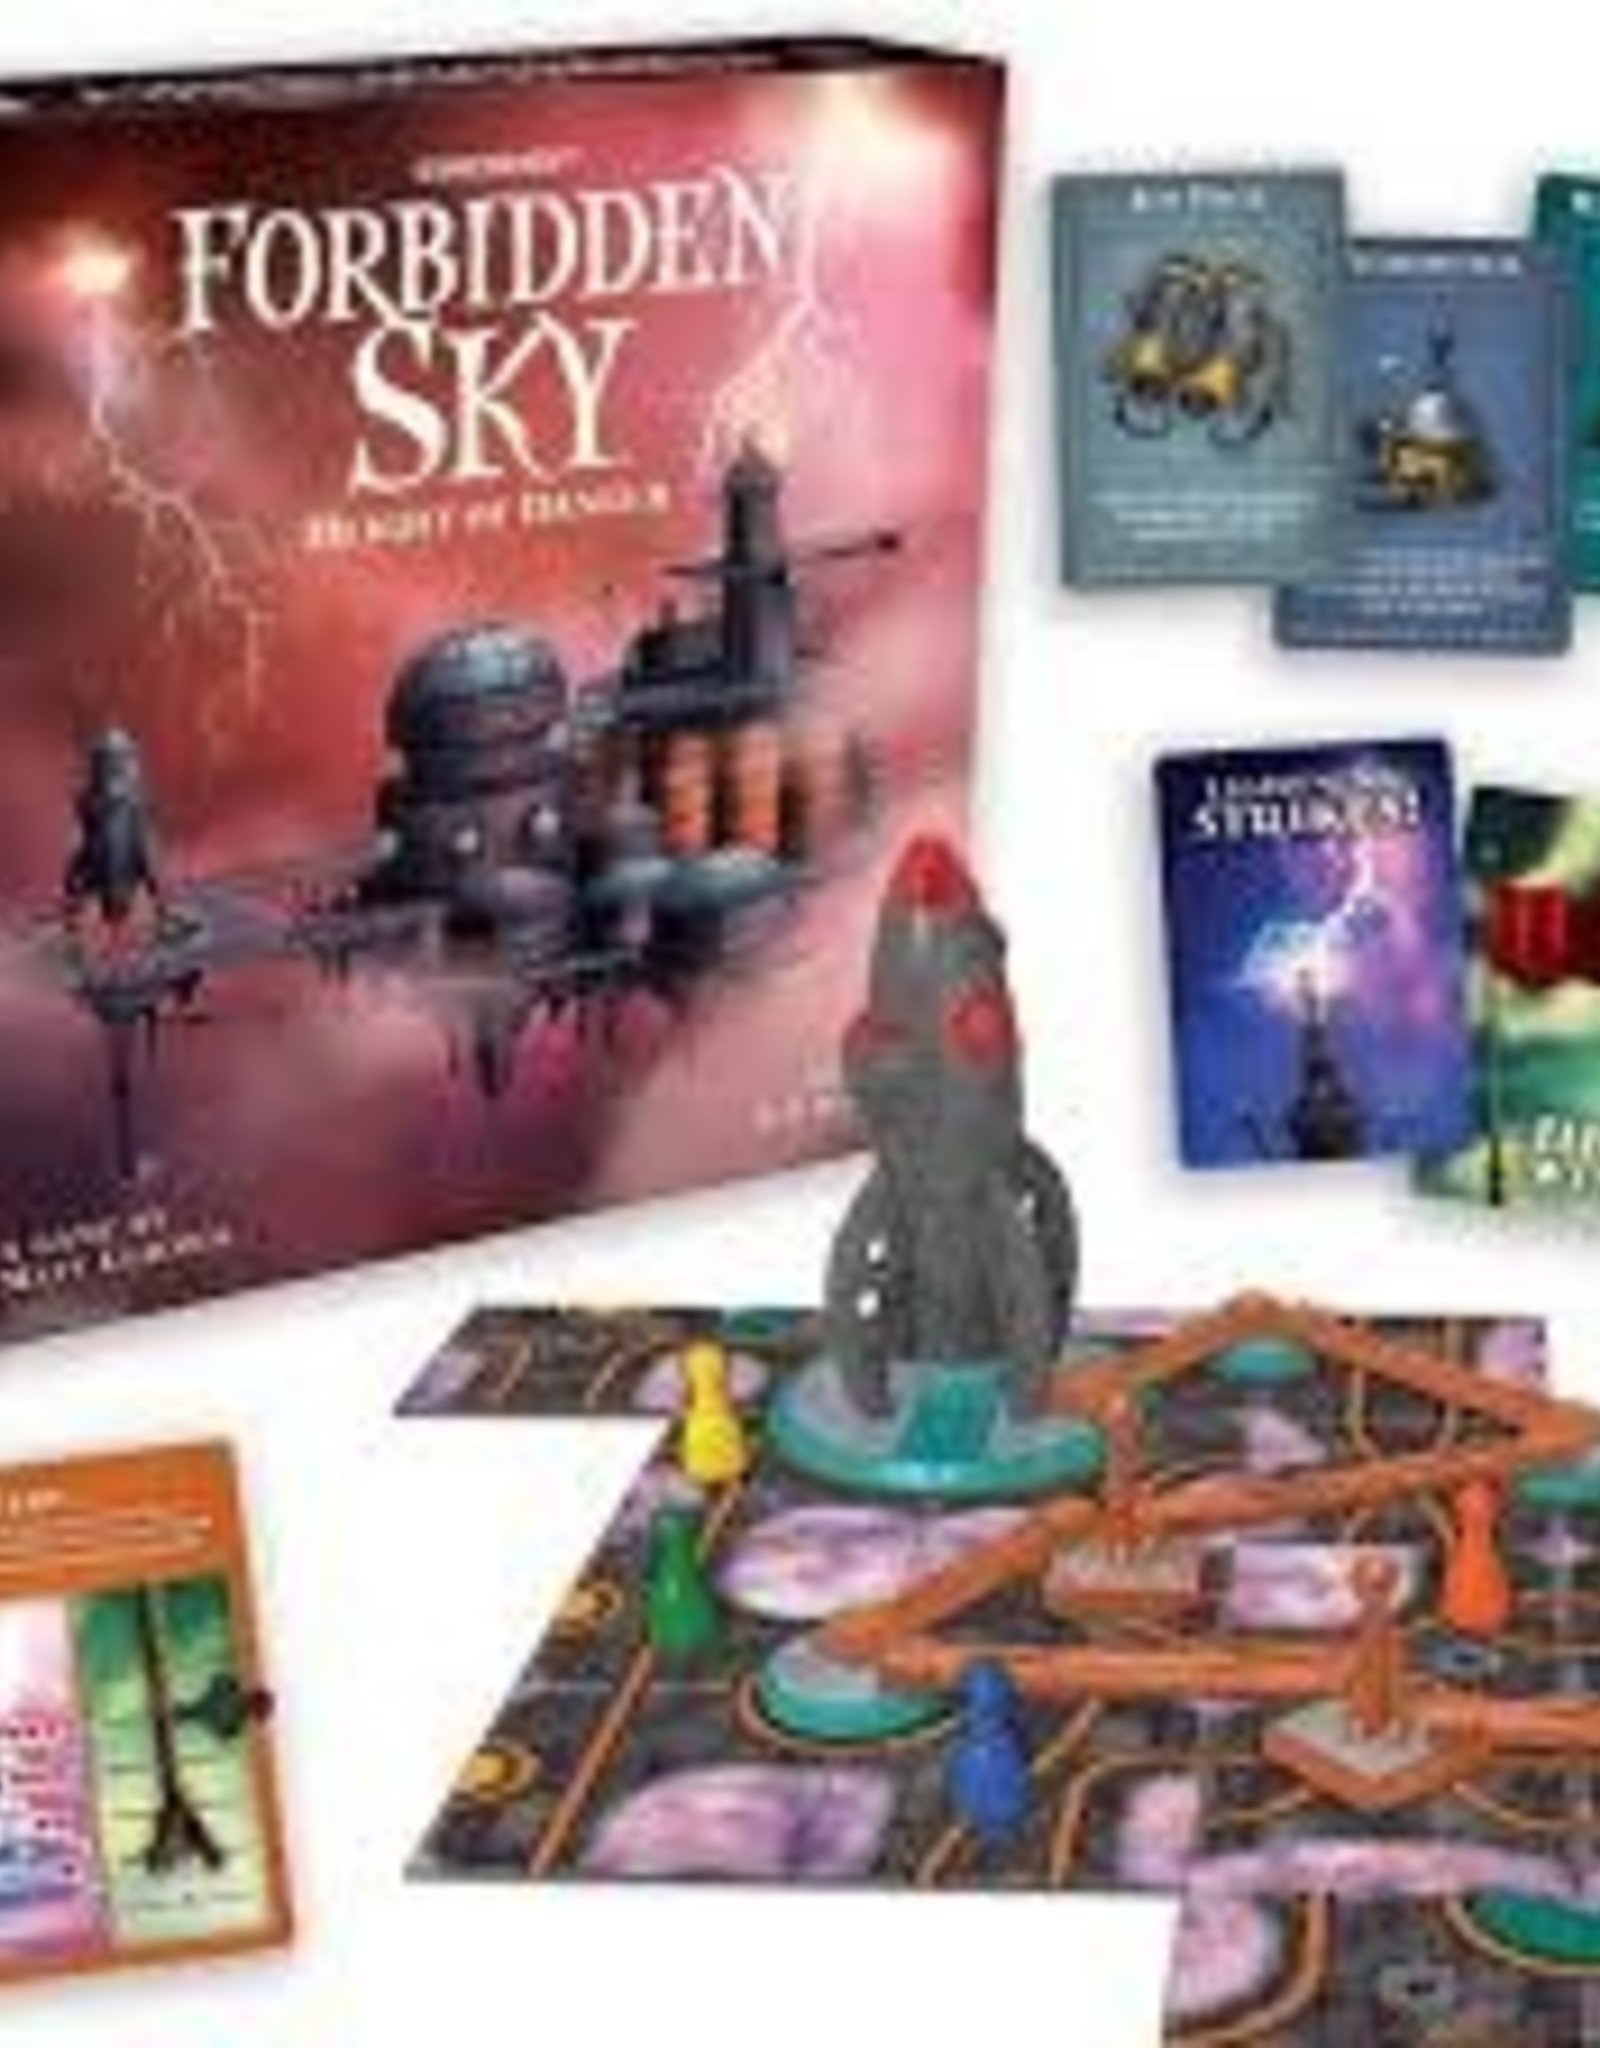 Gamewright Forbidden Sky